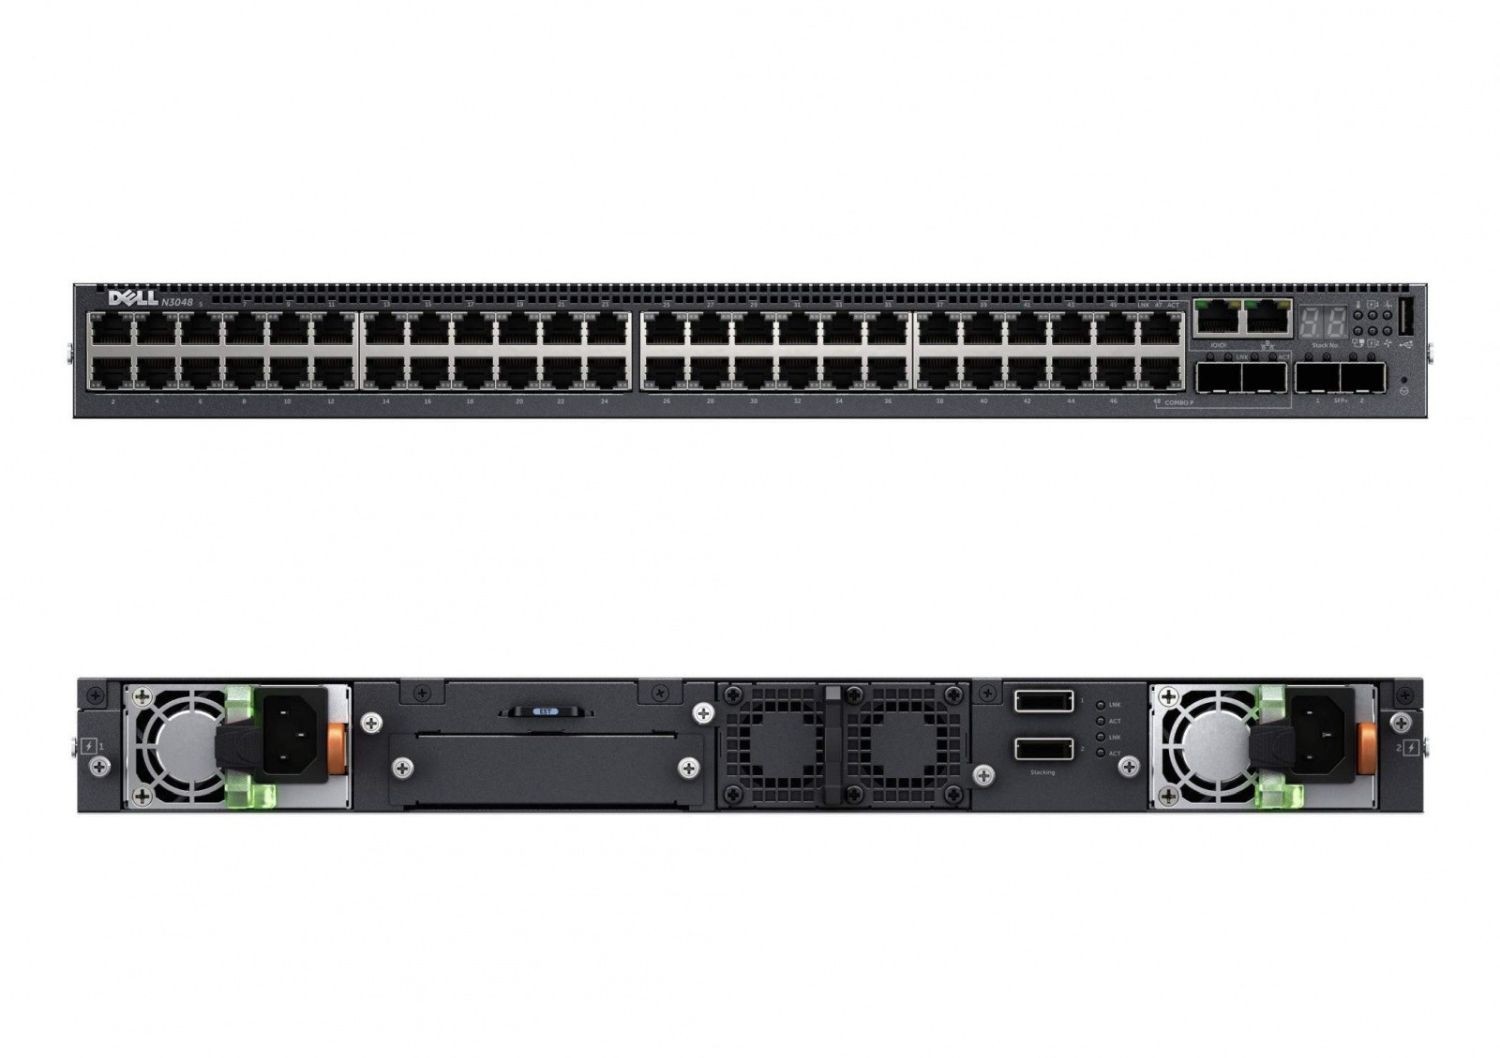 Dell Switch zarządzalny Networking N2048P L2 POE+ 48x 1GbE + 2x 10GbE SFP+ fixed ports Stacking IO to PSU air AC